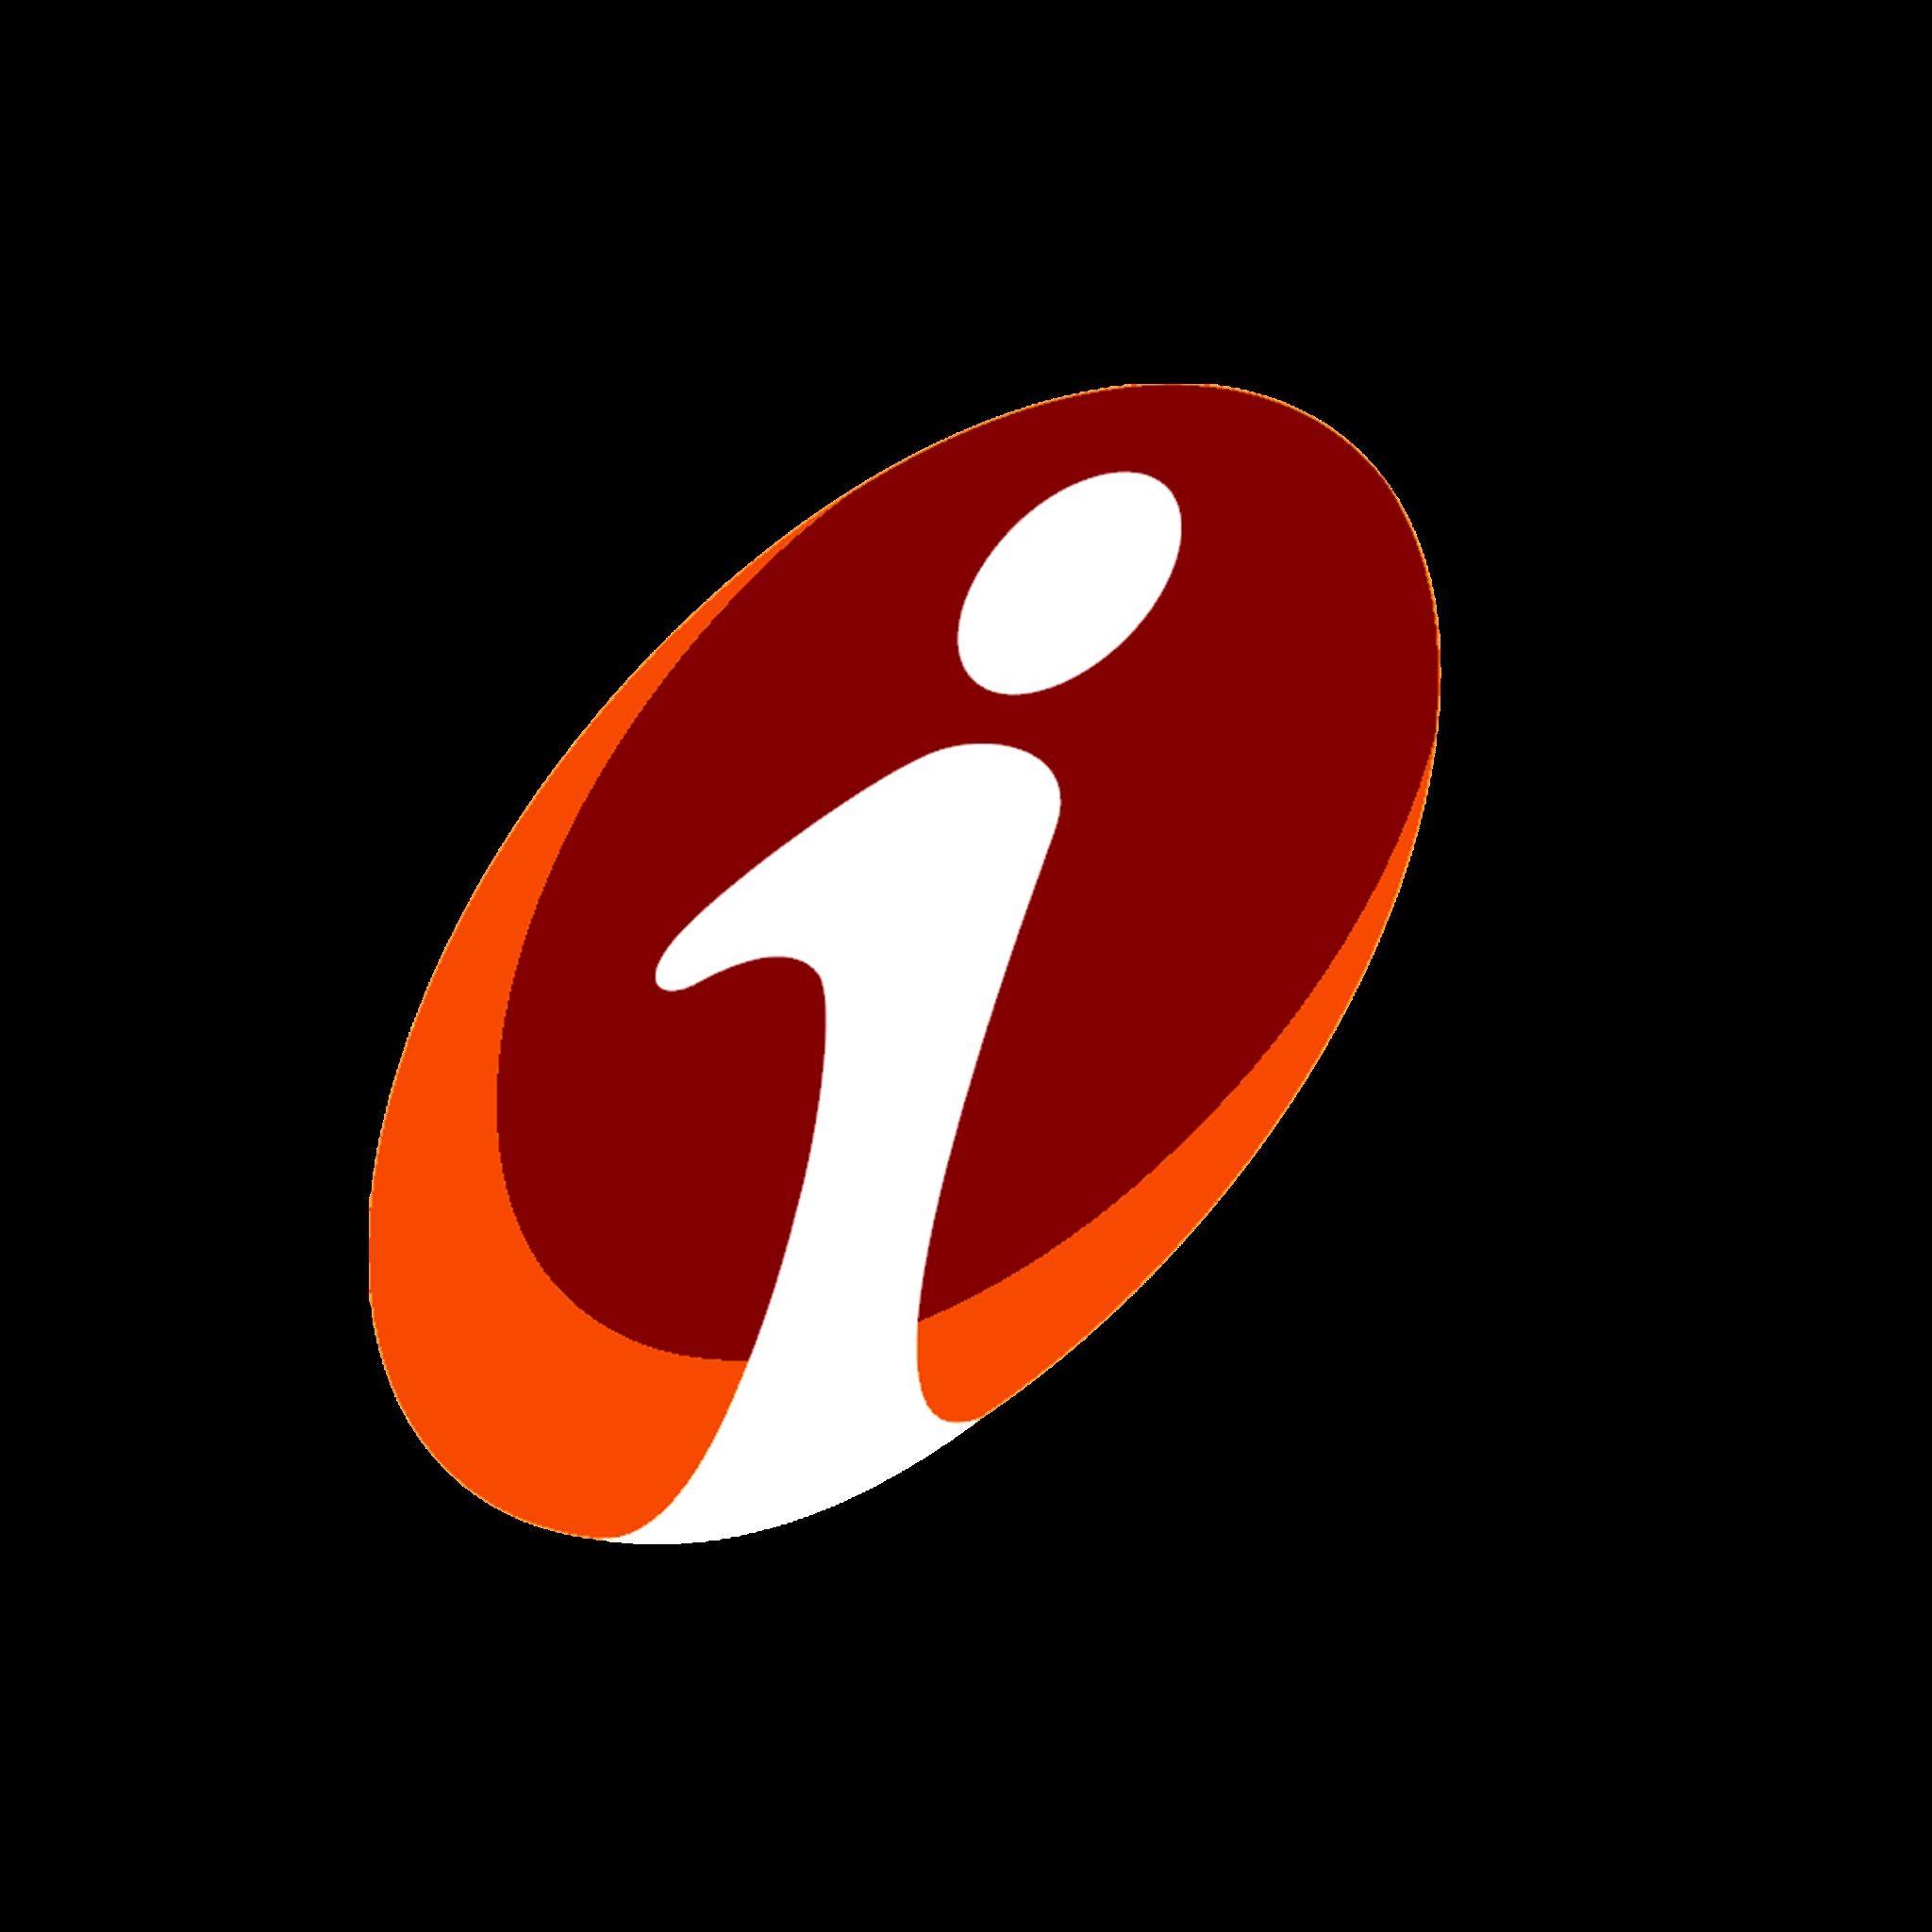 ICICI Bank Logo - ICICI Bank